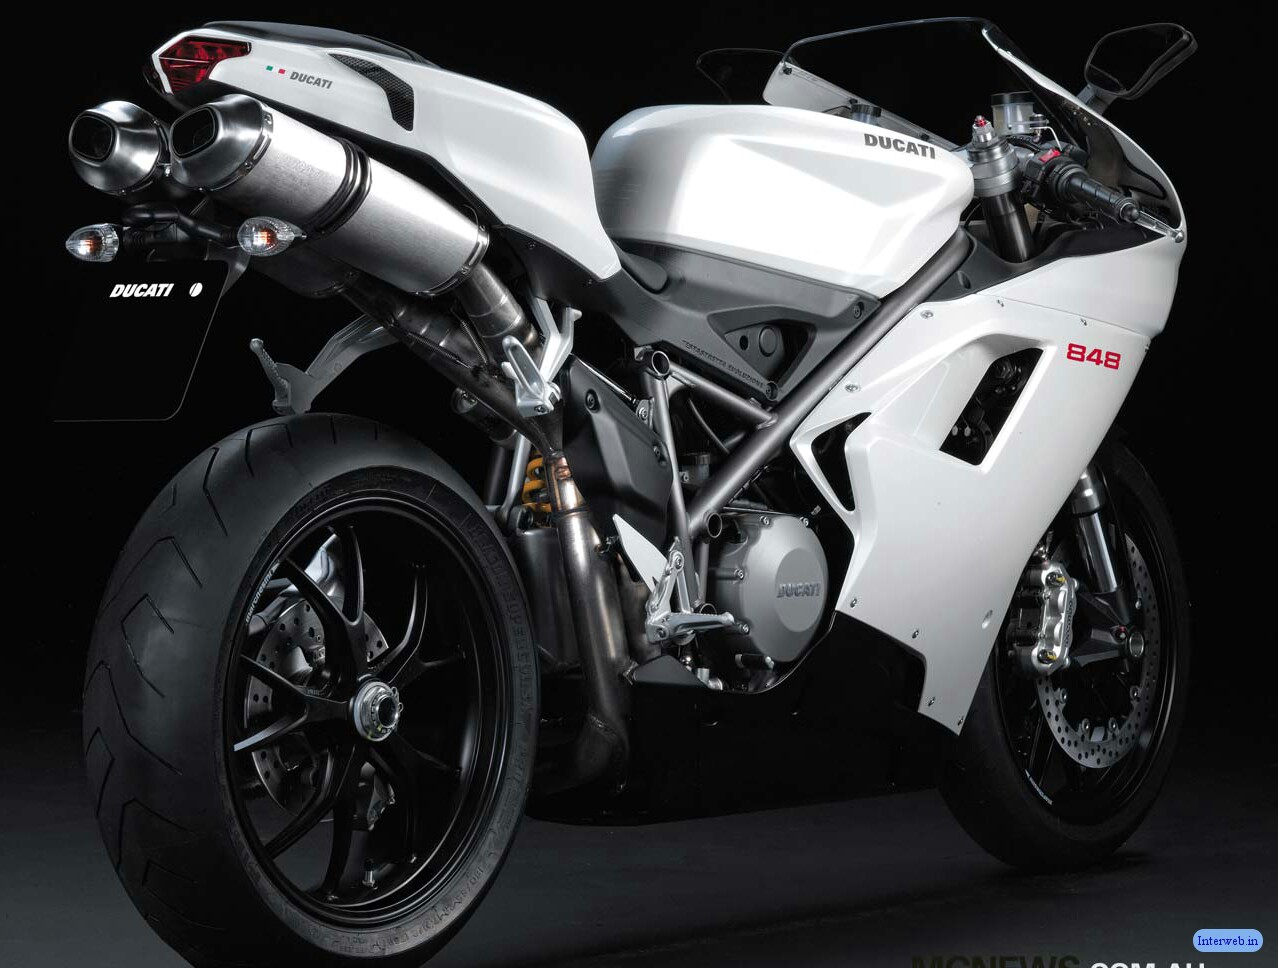 Sports Bike Wallpaper - Ducati 848 Engine - 1278x968 Wallpaper 